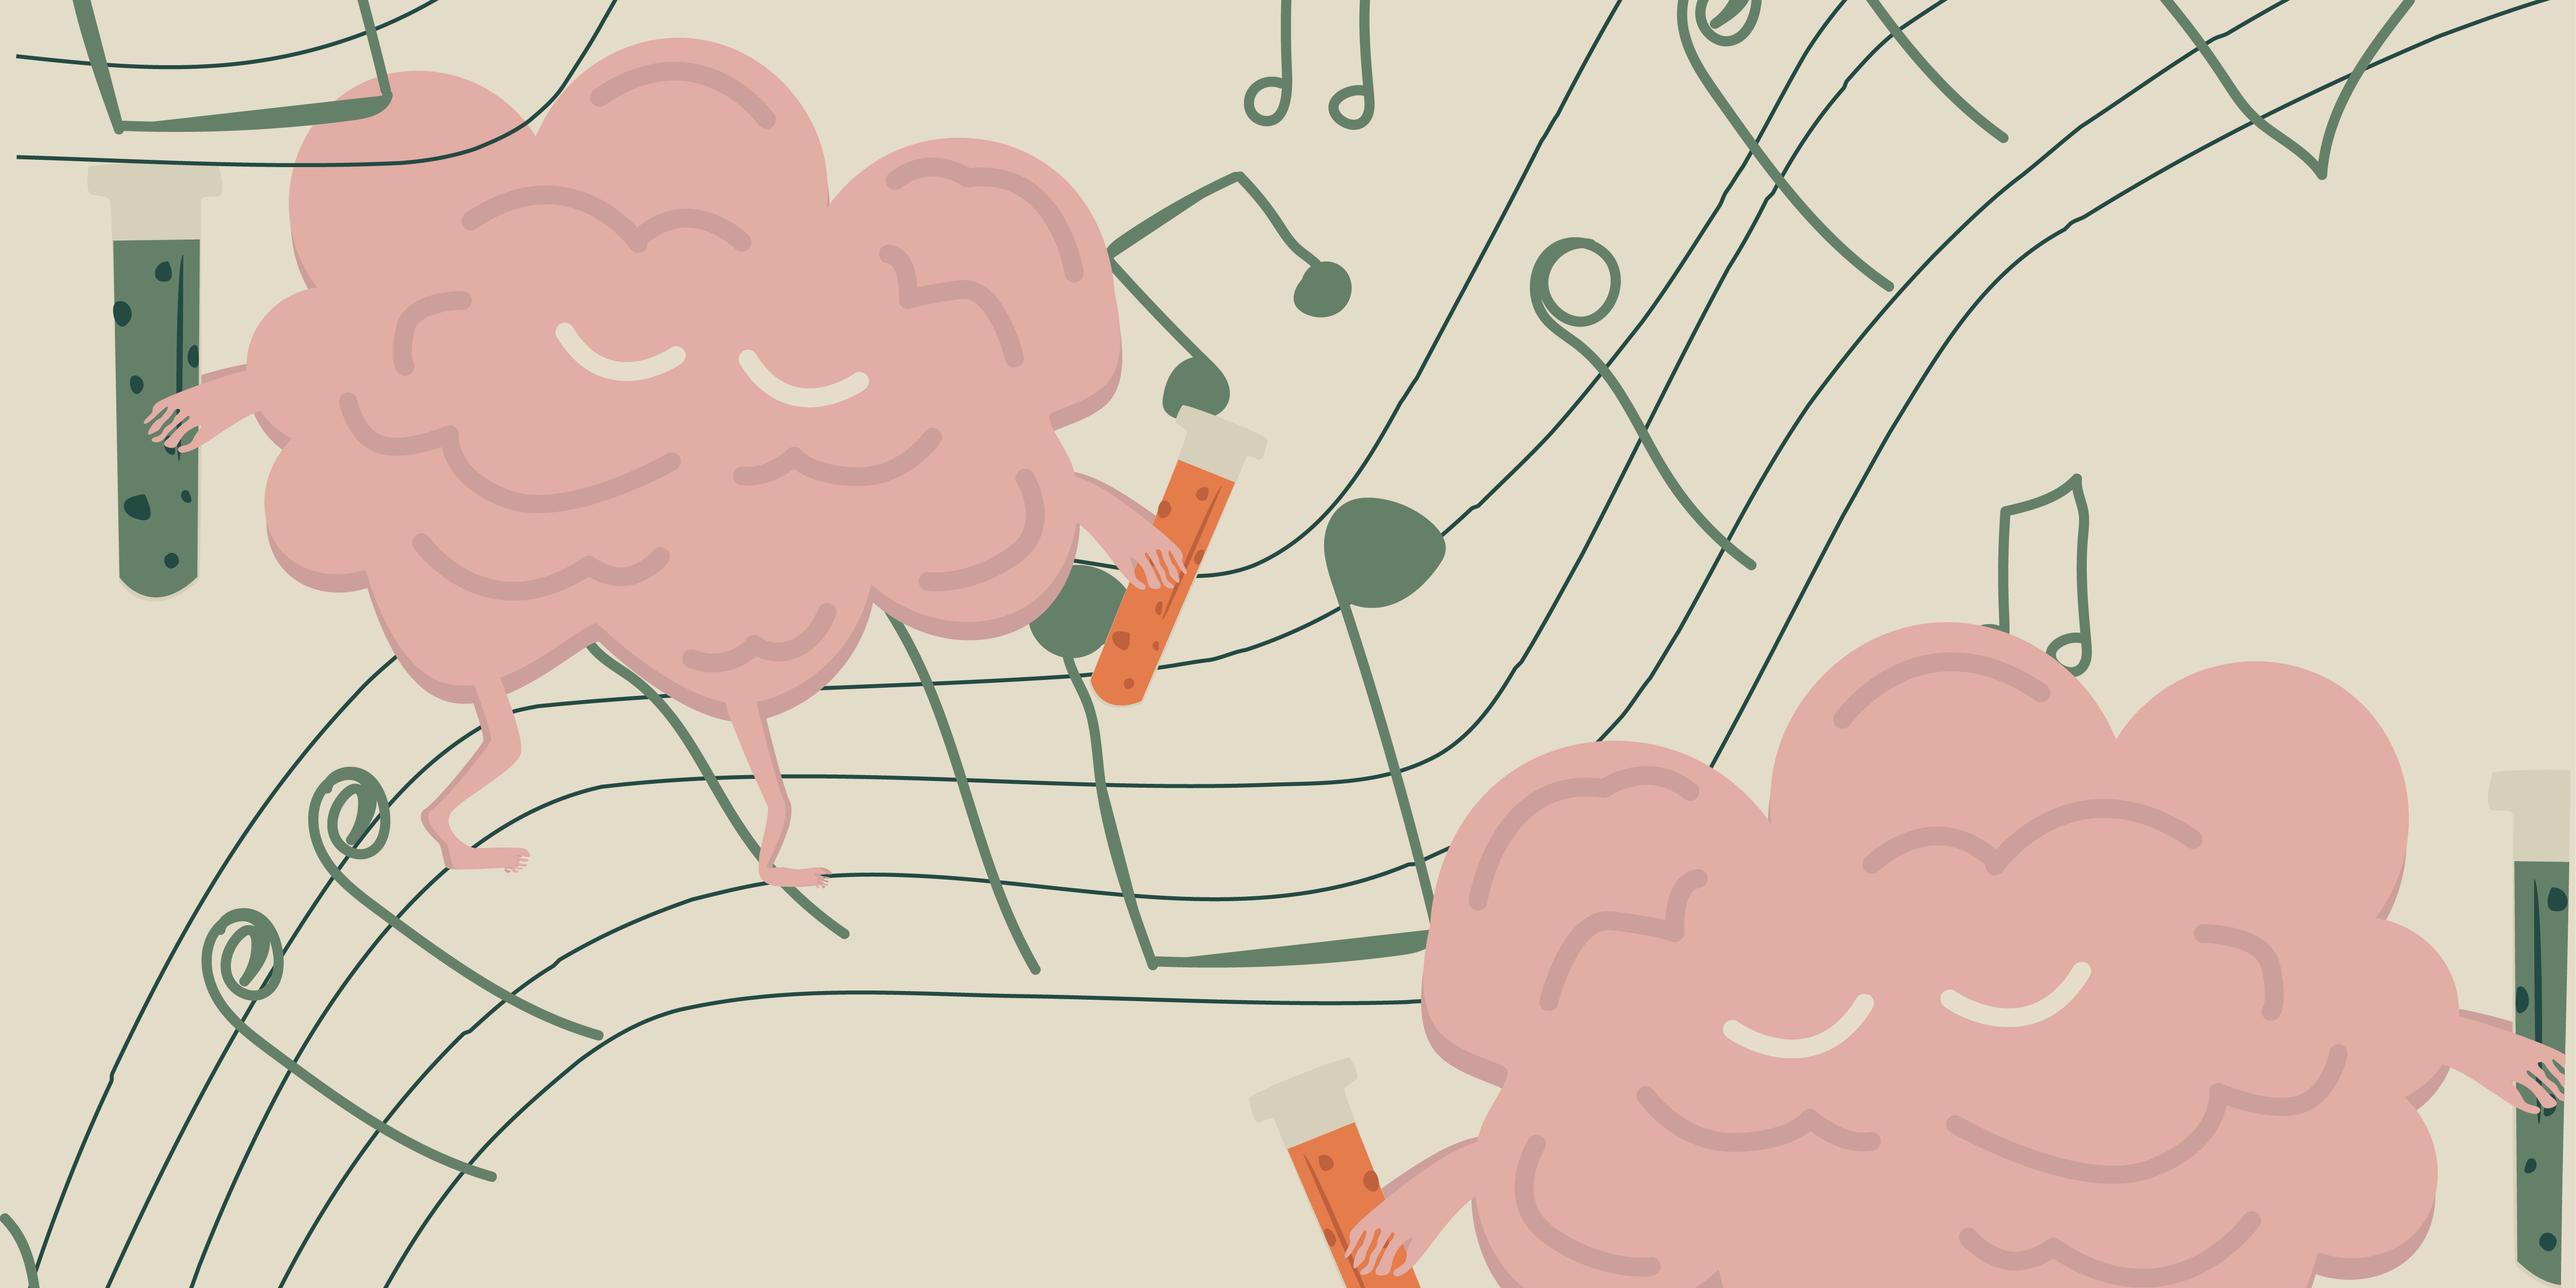 Hjerner som er omringet af musik, som en illustration af den positive påvirkning kultur kan have på hjernens signalstoffer